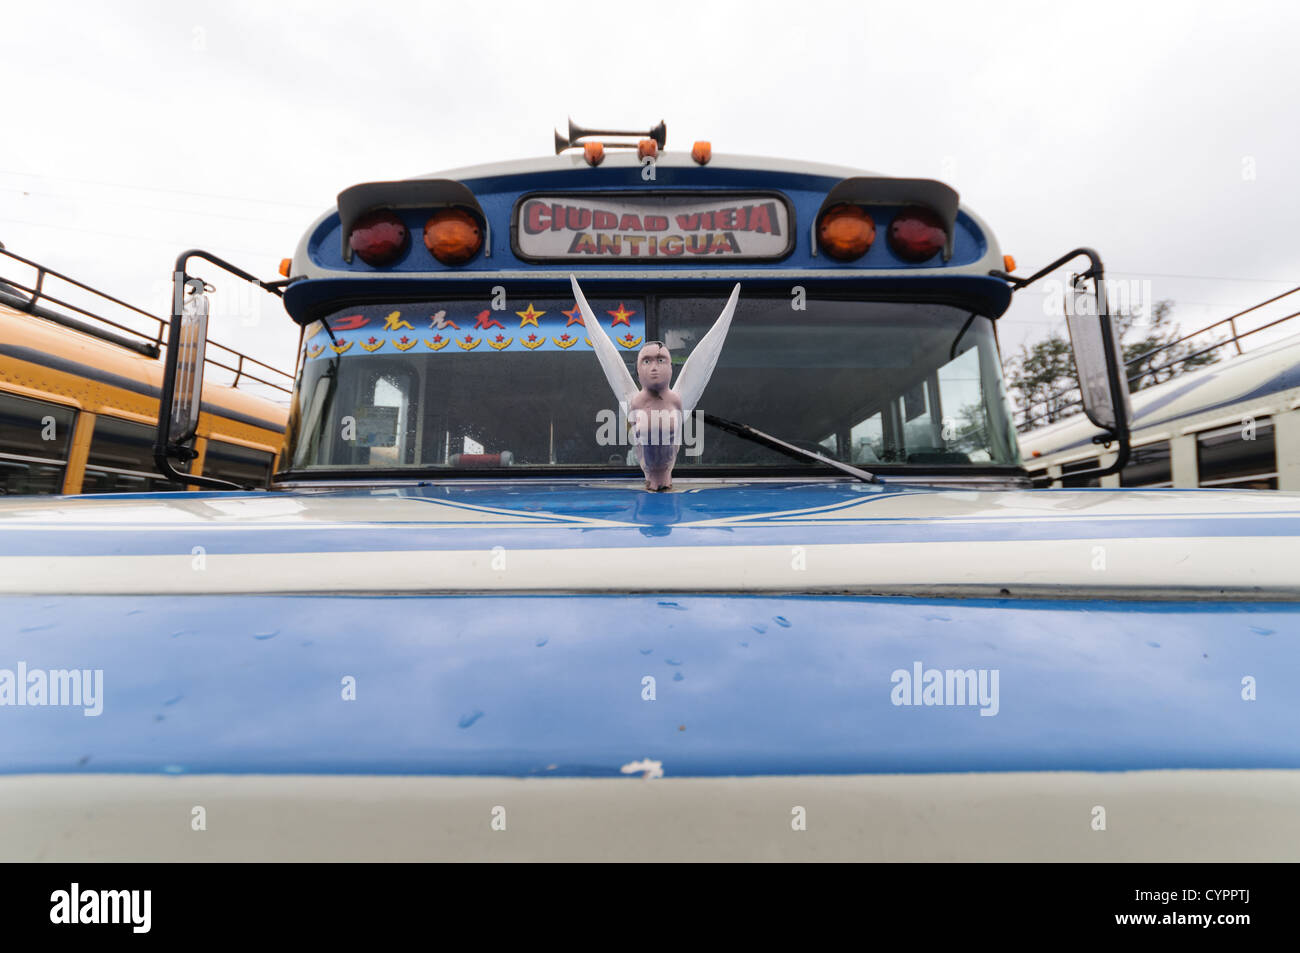 Fronthaube ein Huhn-Bus hinter dem Mercado Municipal (Stadtmarkt) in Antigua, Guatemala. Aus diesem umfangreichen zentralen Busbahnhof strahlenförmig der Routen in Guatemala. Oft bunt bemalt, die Huhn-Busse sind nachgerüsteten amerikanische Schulbusse und bieten ein günstiges Transportmittel im ganzen Land. Stockfoto